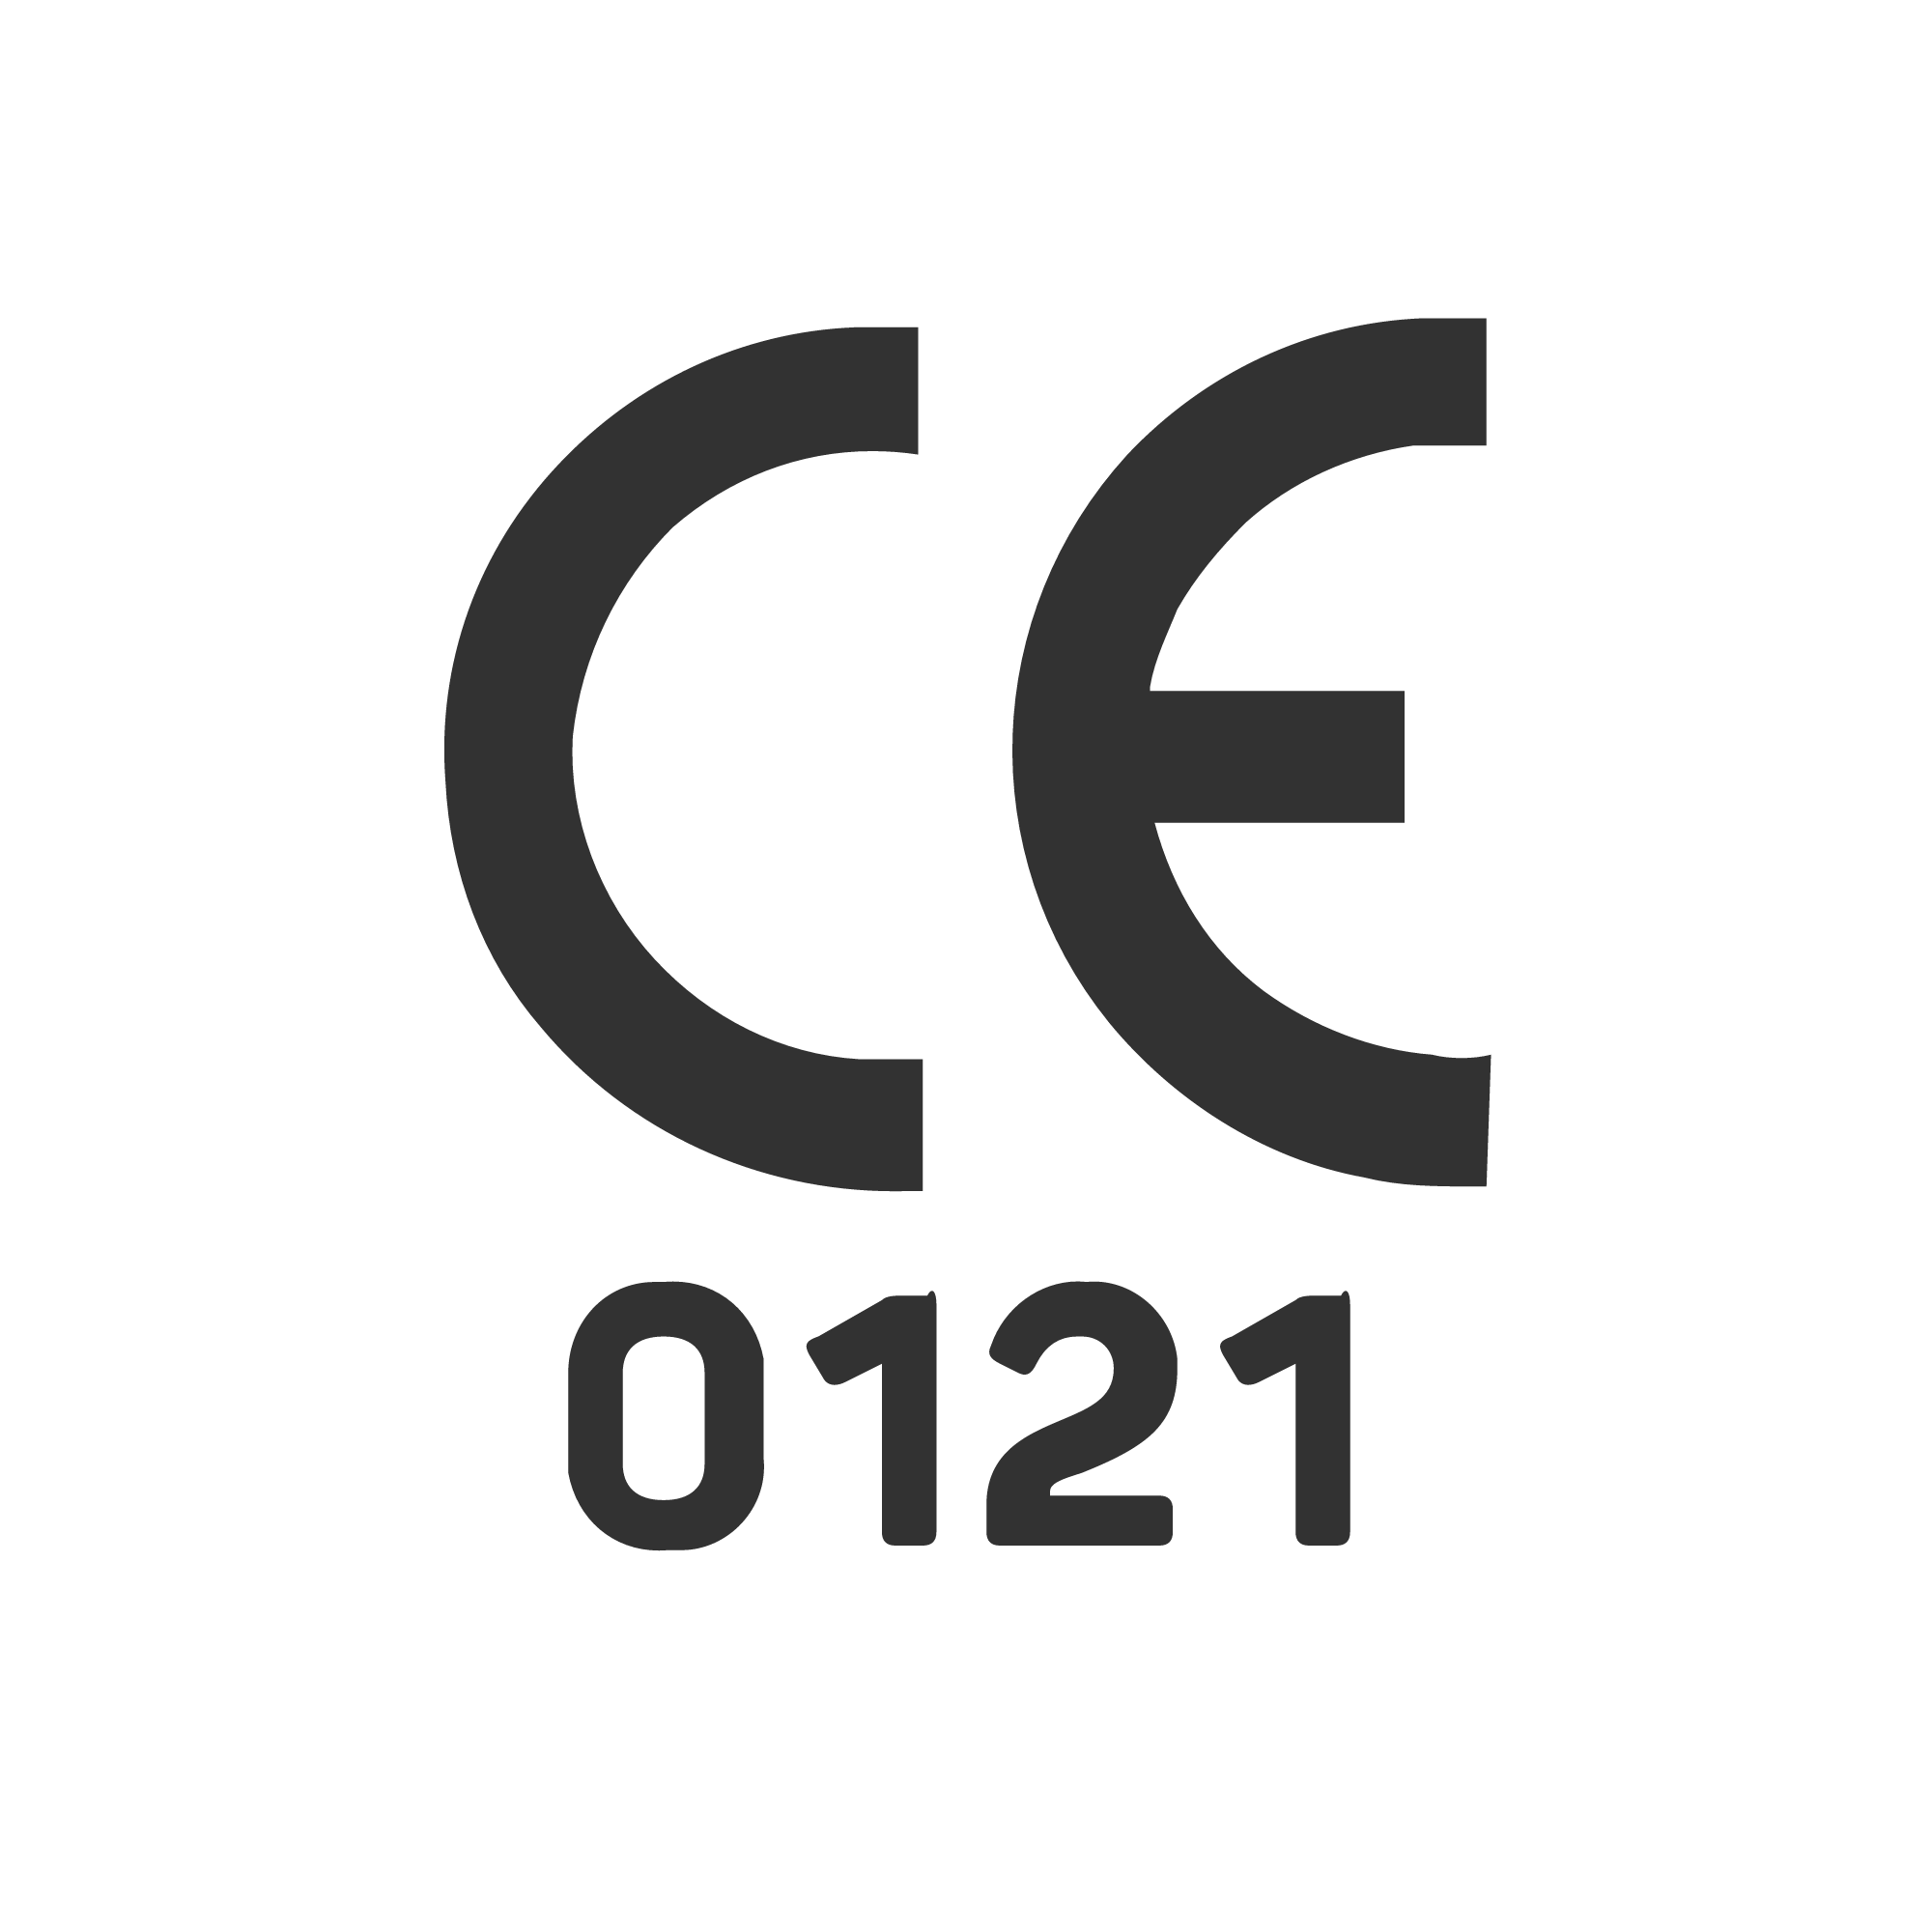 CE 0121